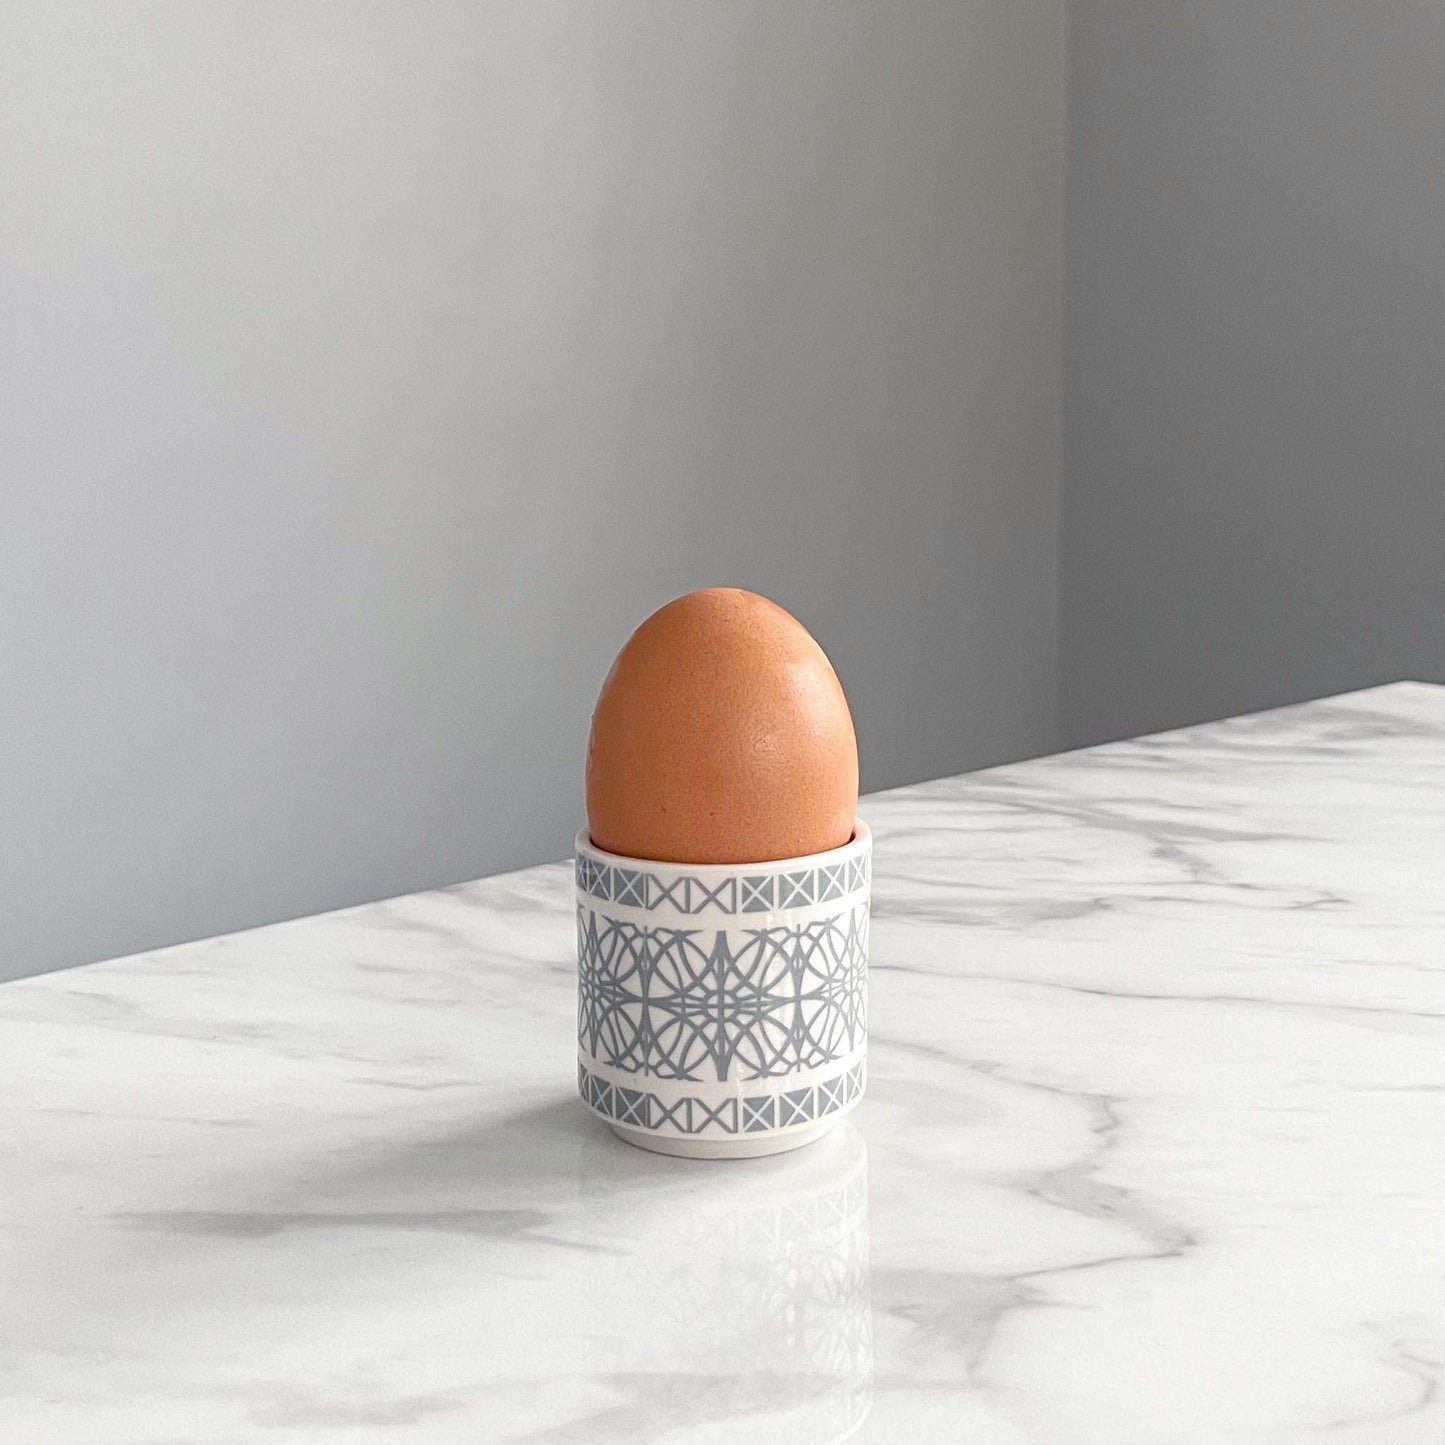 Porcelain Egg Cup - Architecture Design